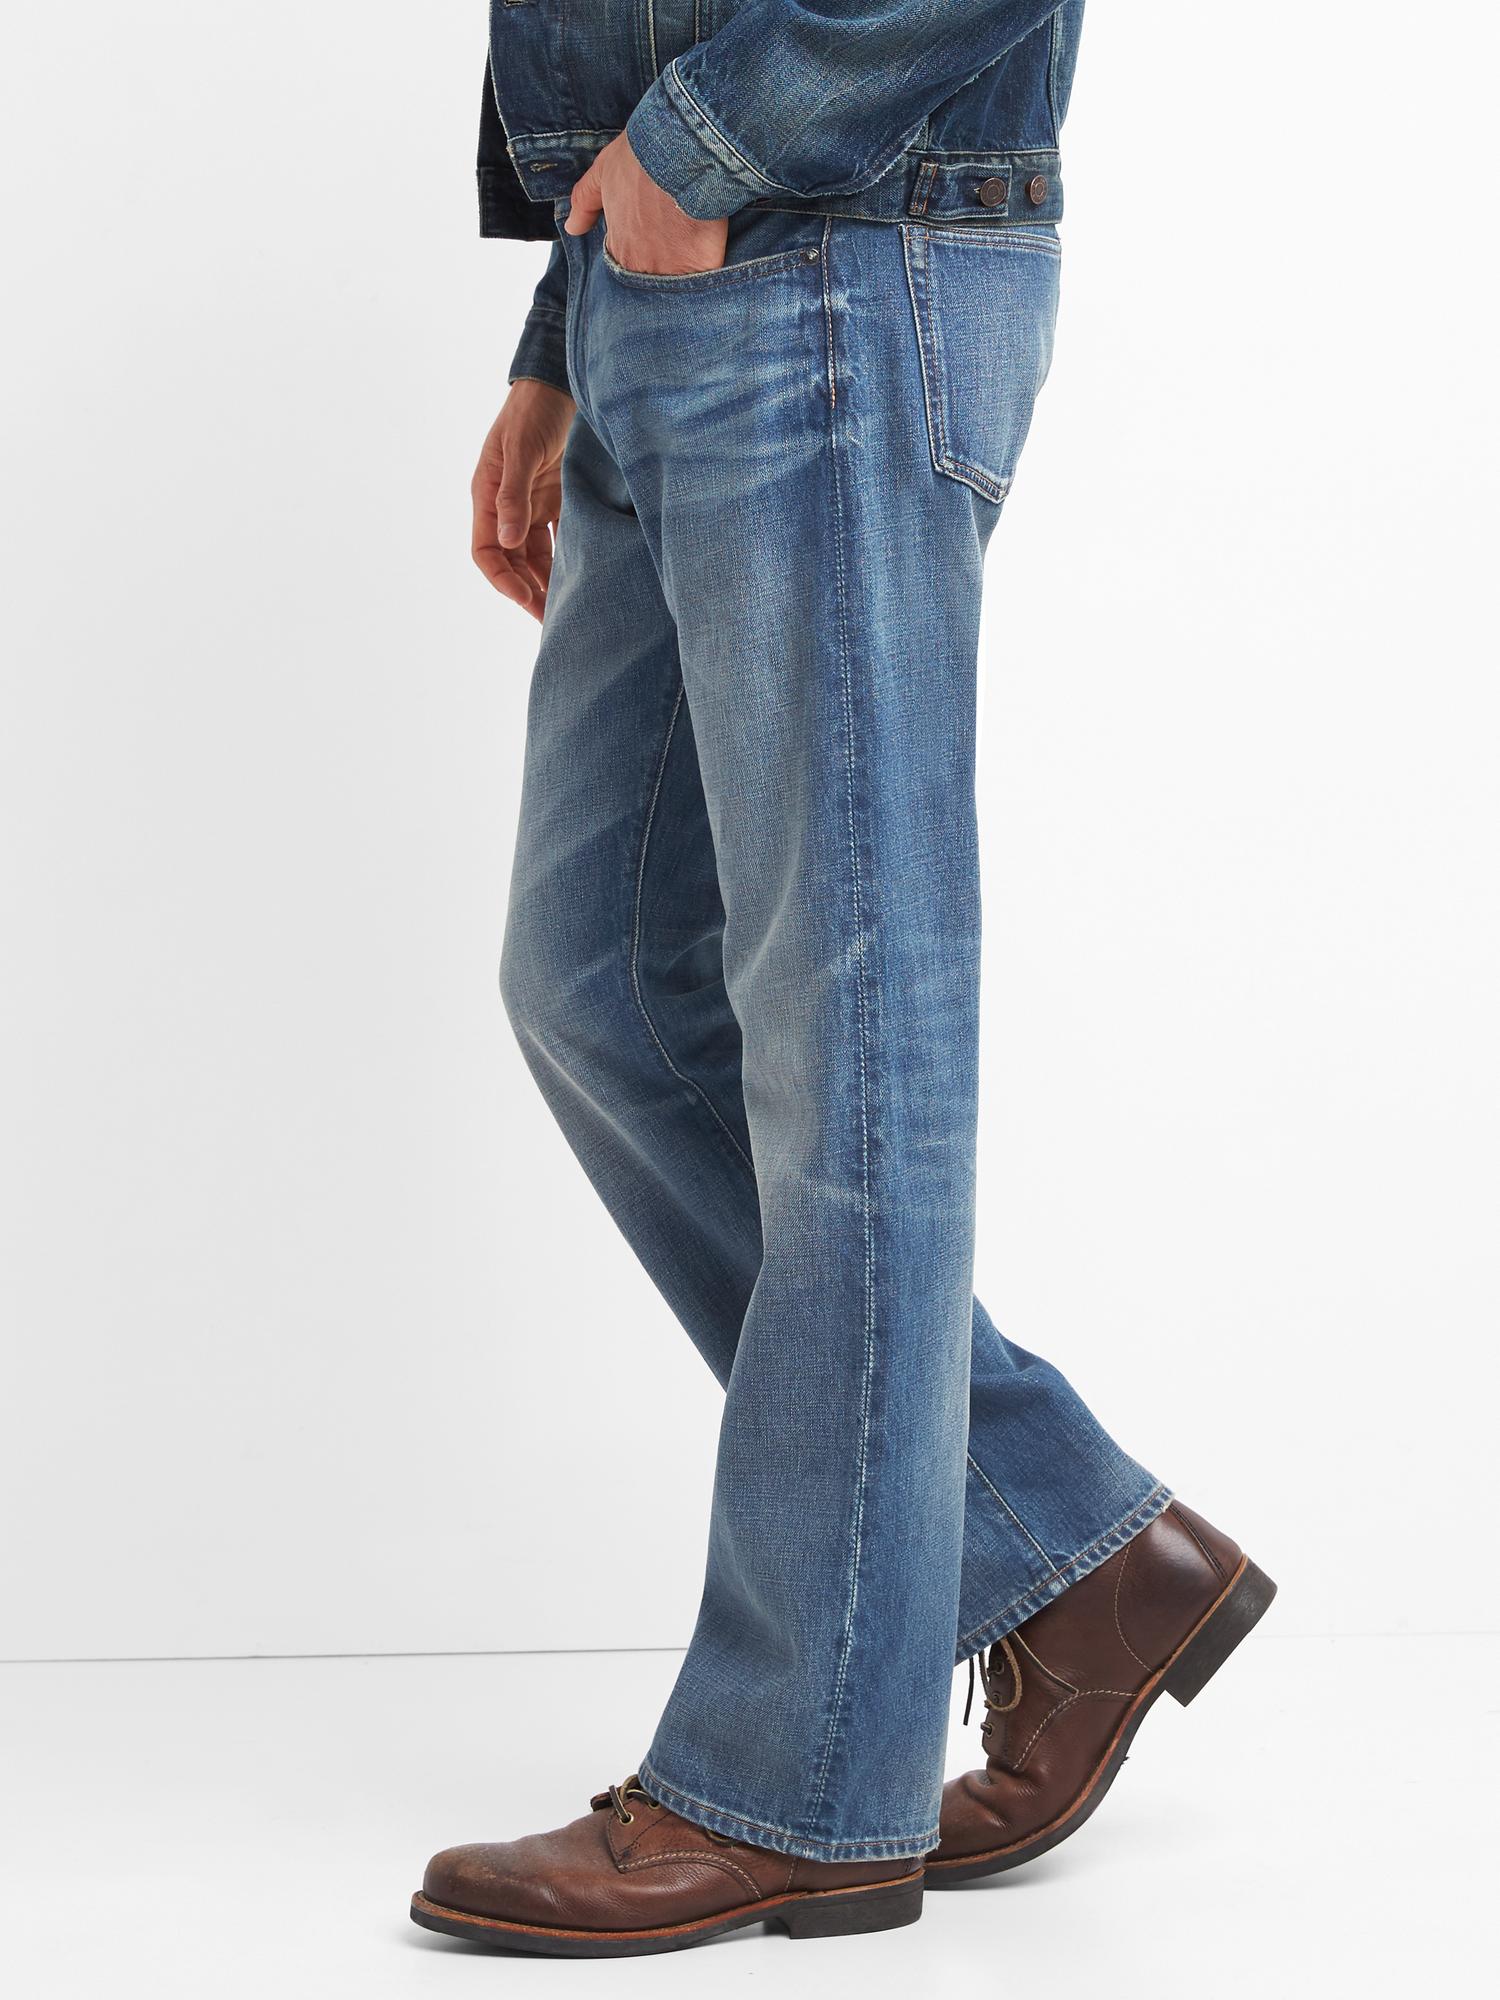 gap 1969 men's bootcut jeans